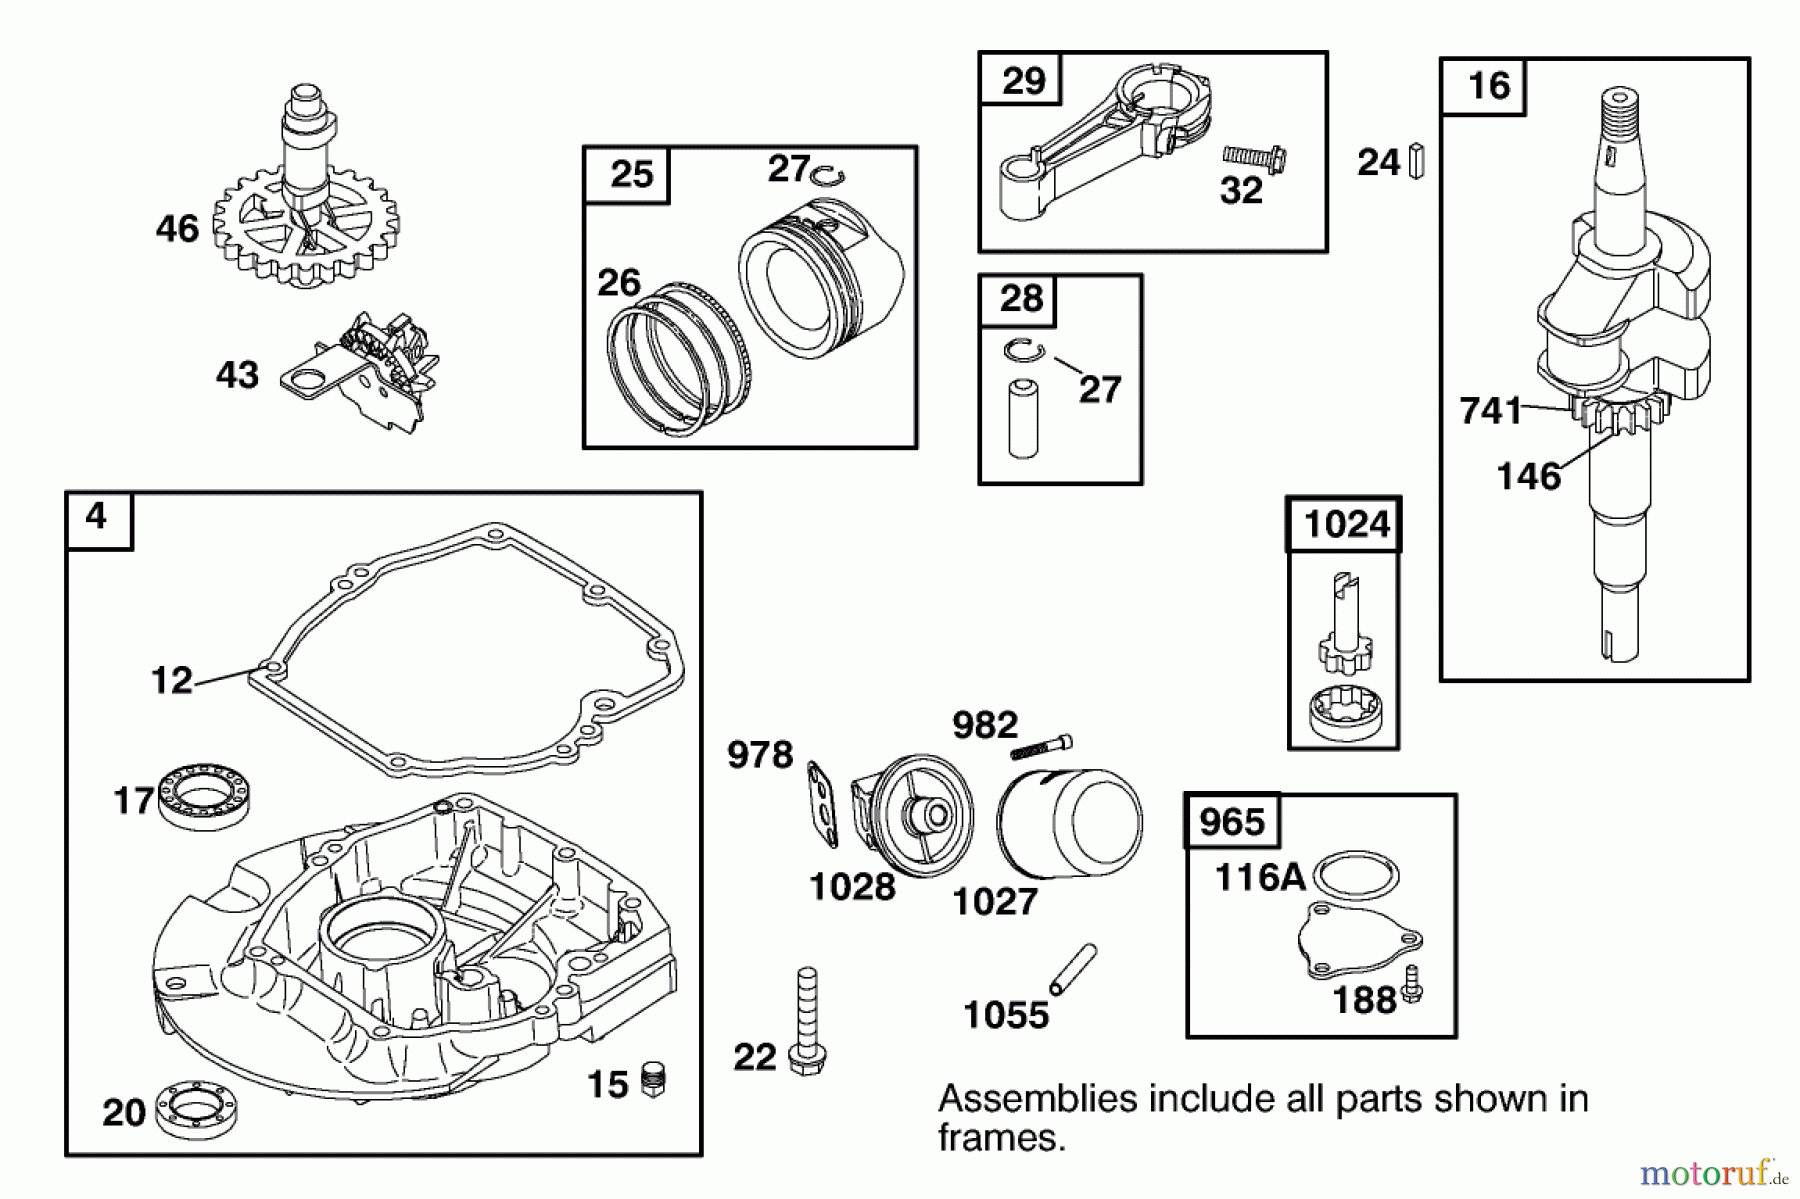  Toro Neu Mowers, Walk-Behind Seite 2 22162 - Toro Recycler Mower, 2000 (200000001-200999999) ENGINE GTS-200 #3